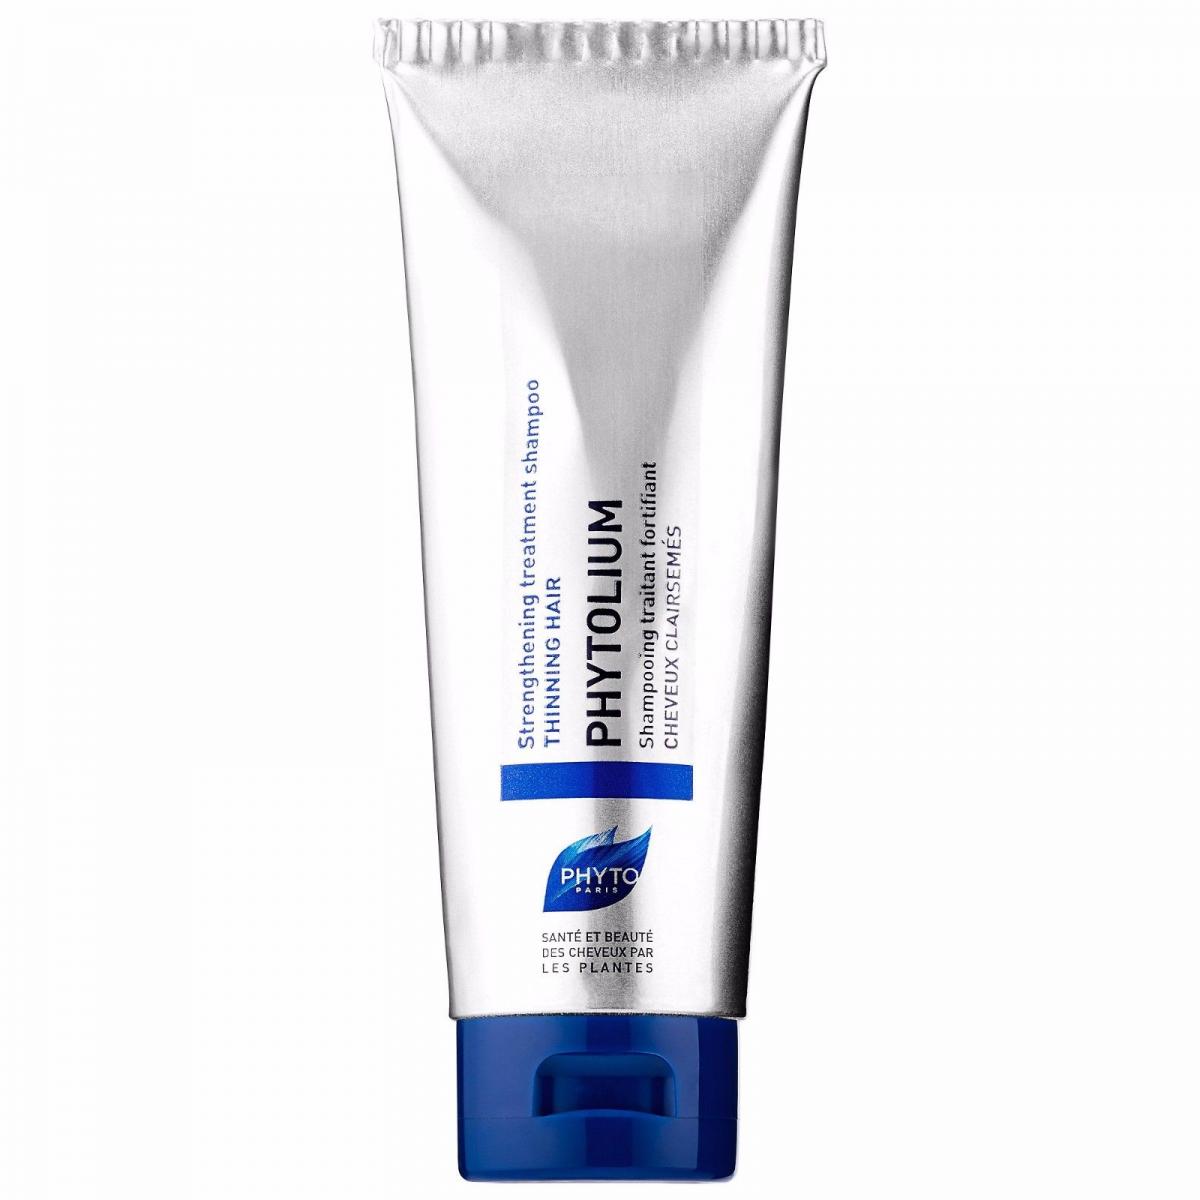  شامپو فیتولیوم - Strengthening Treatment Shampoo